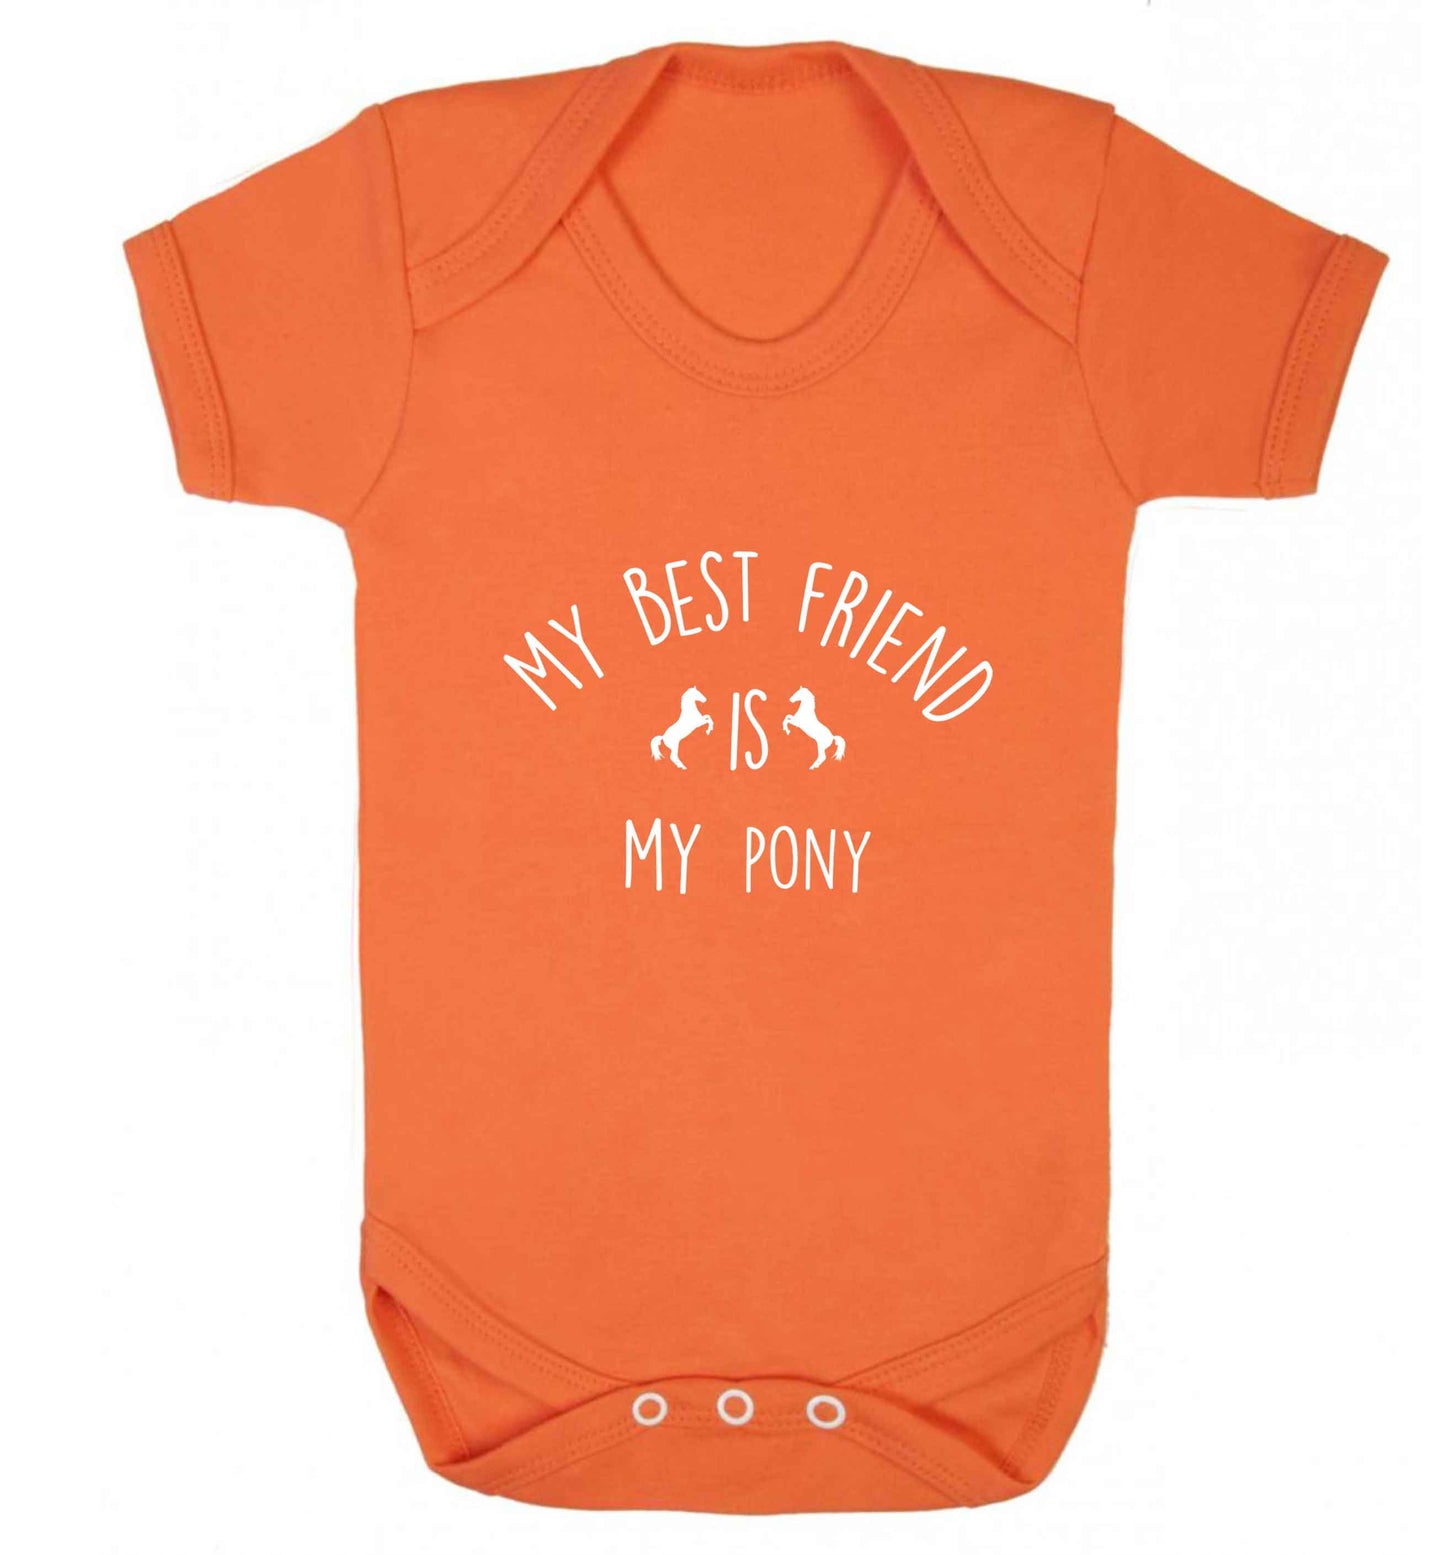 My best friend is my pony baby vest orange 18-24 months